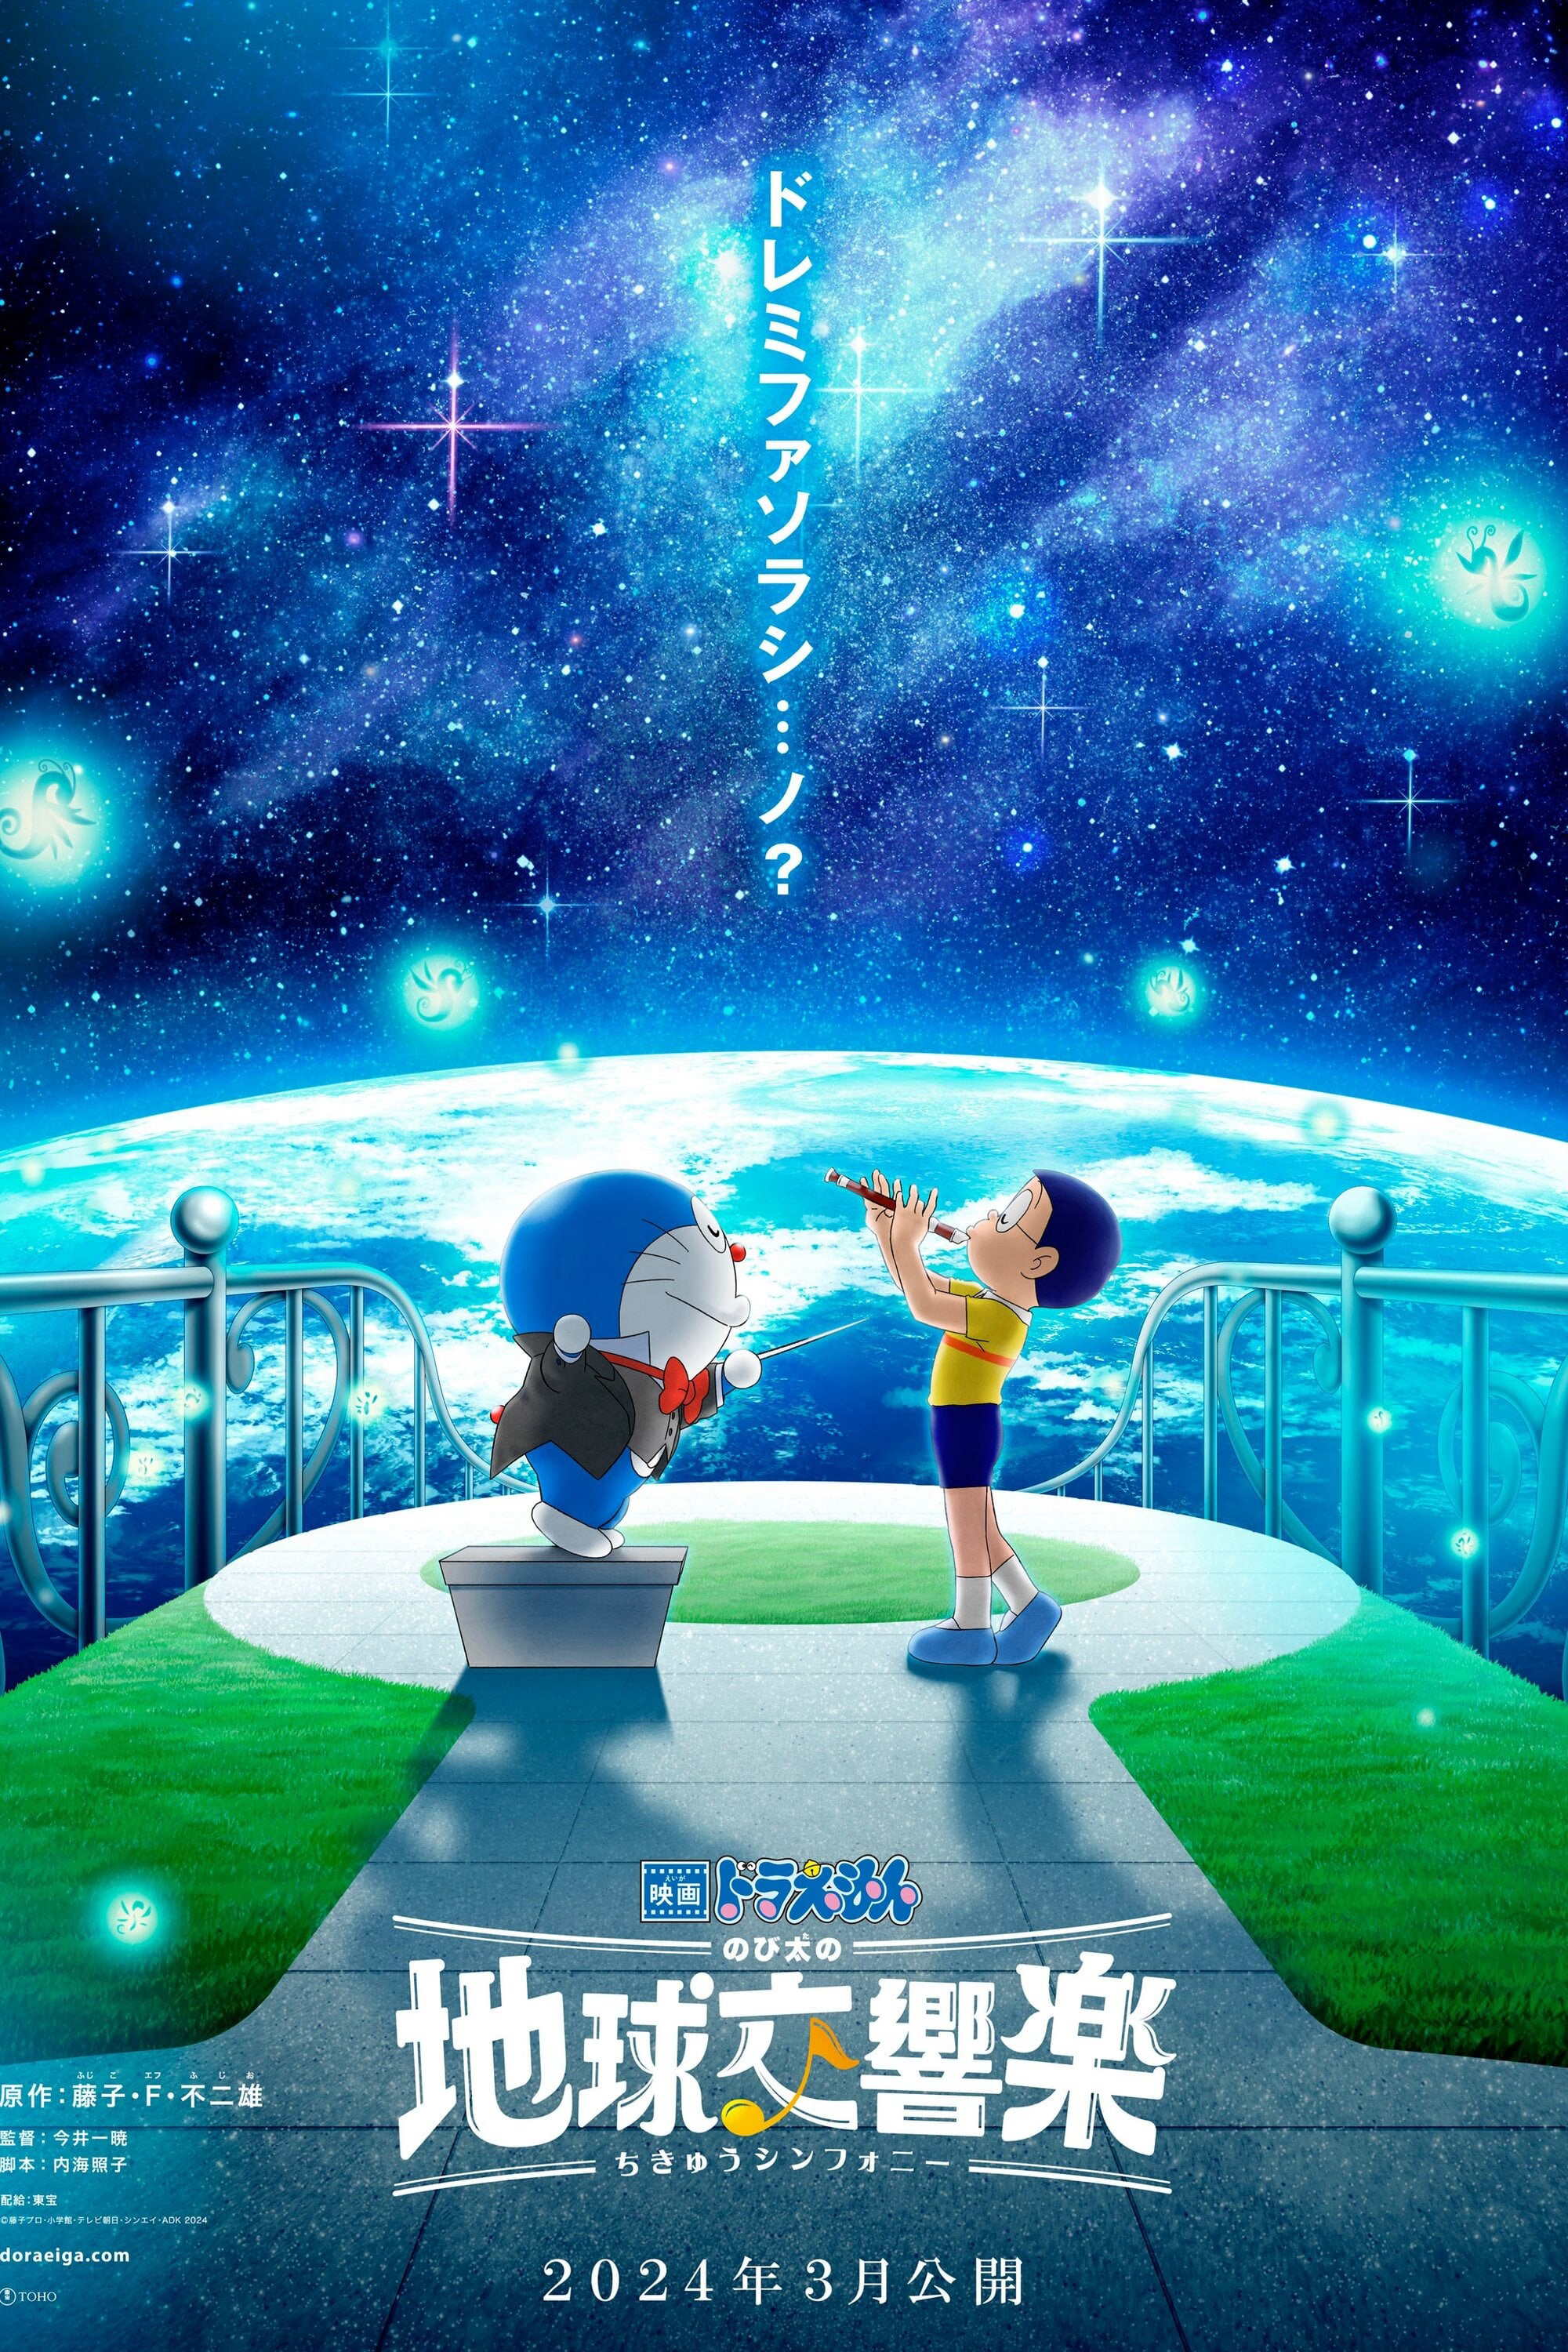 Poster Phim Doraemon: Nobita và bản giao hưởng Địa Cầu (Doraemon the Movie: Nobita's Earth Symphony)